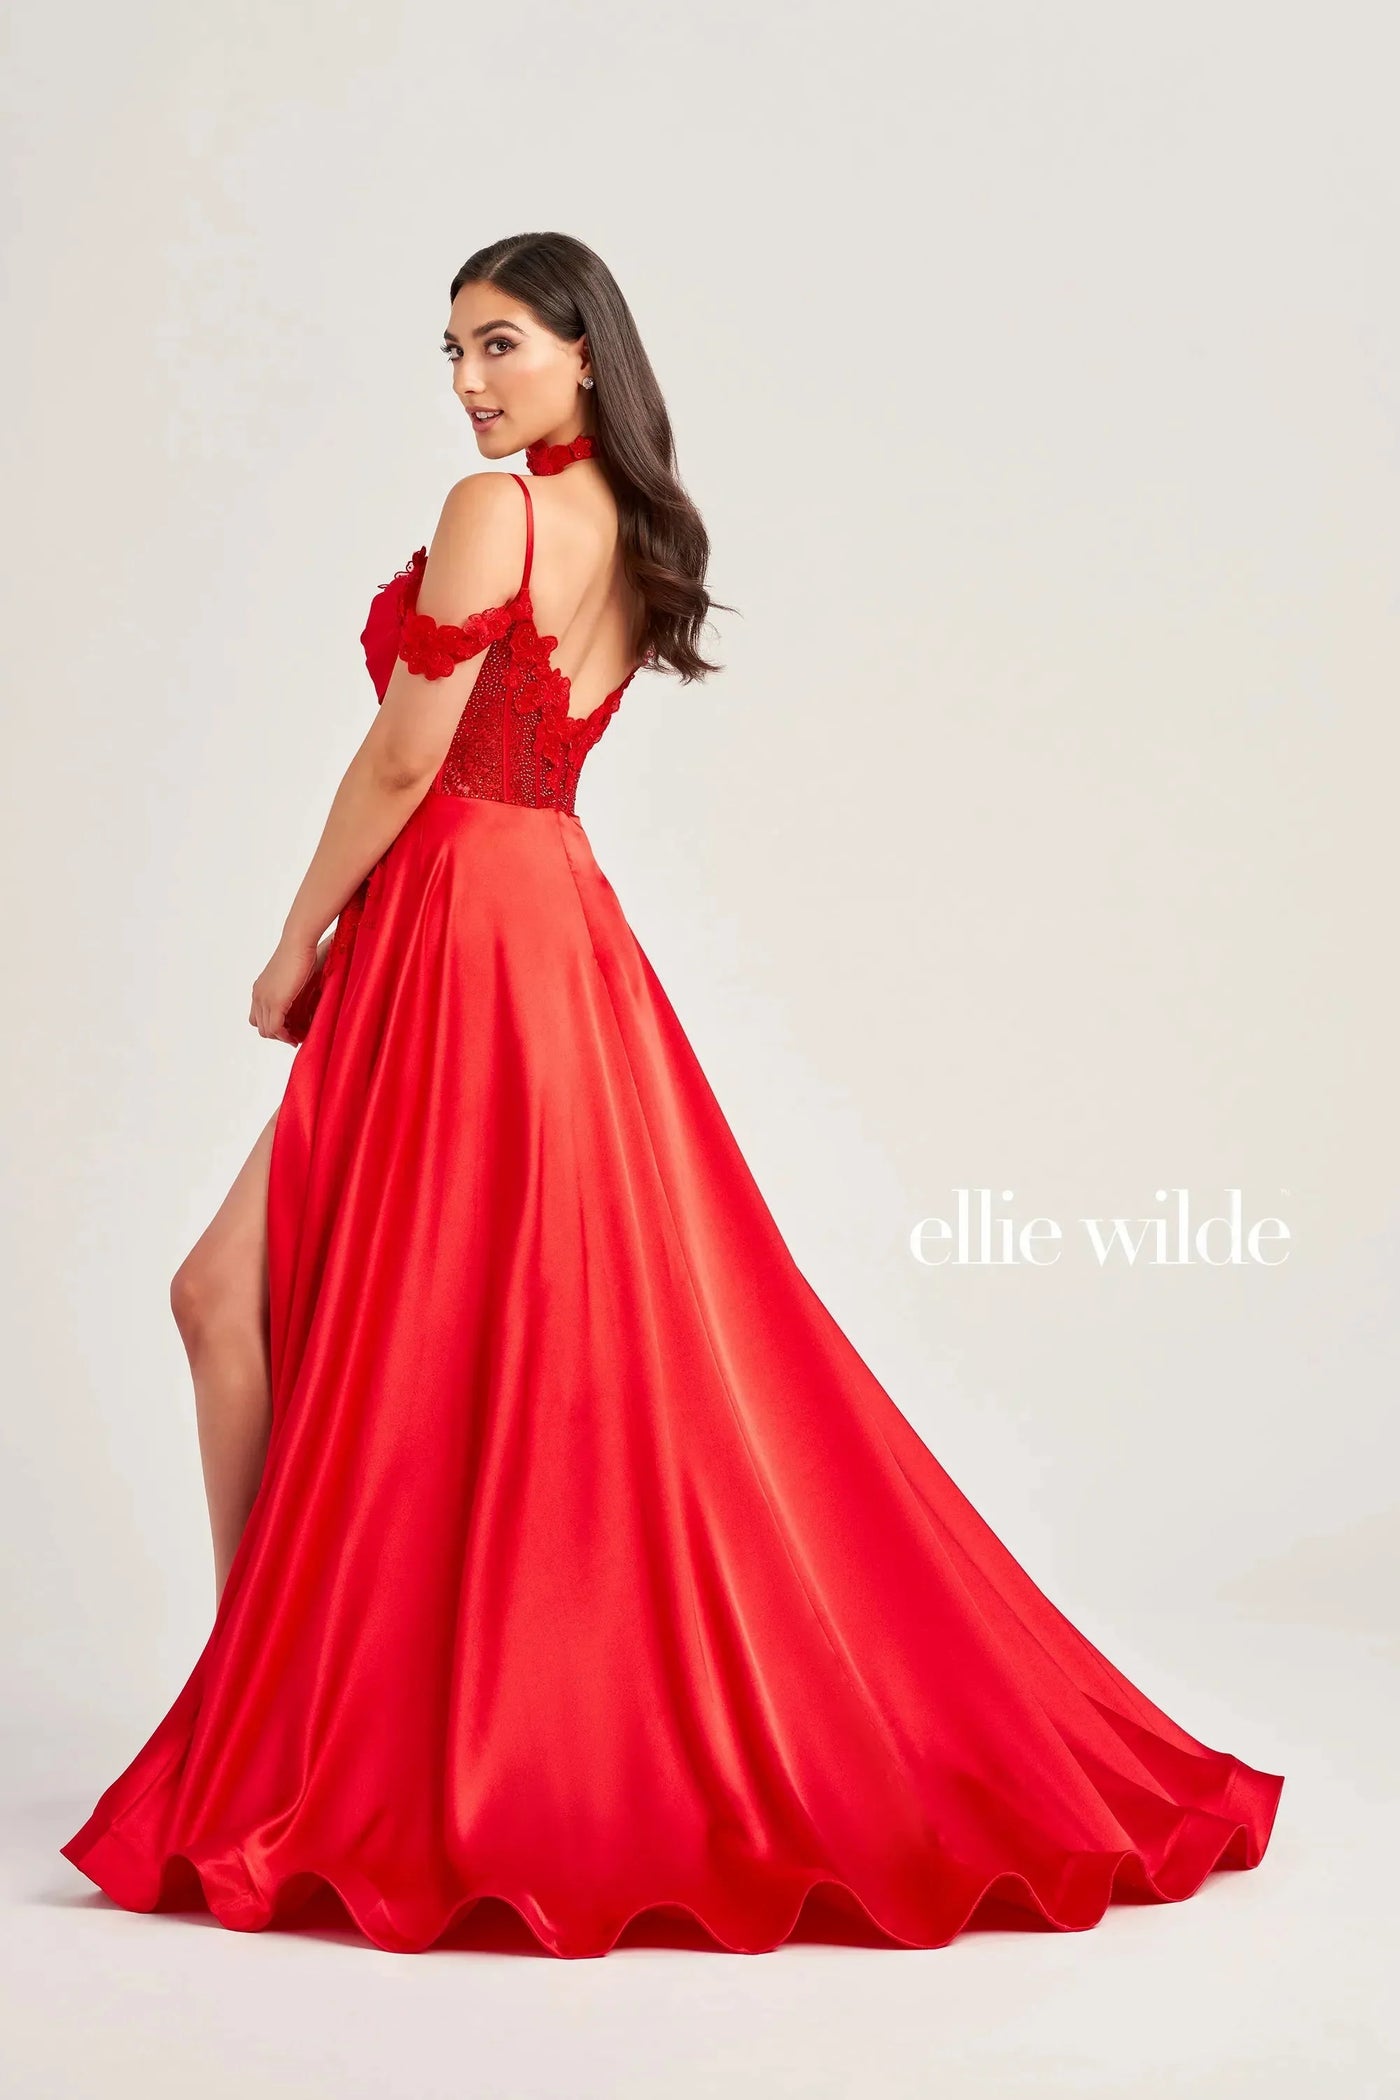 Ellie Wilde EW35029 - Lace Applique A-Line Gown